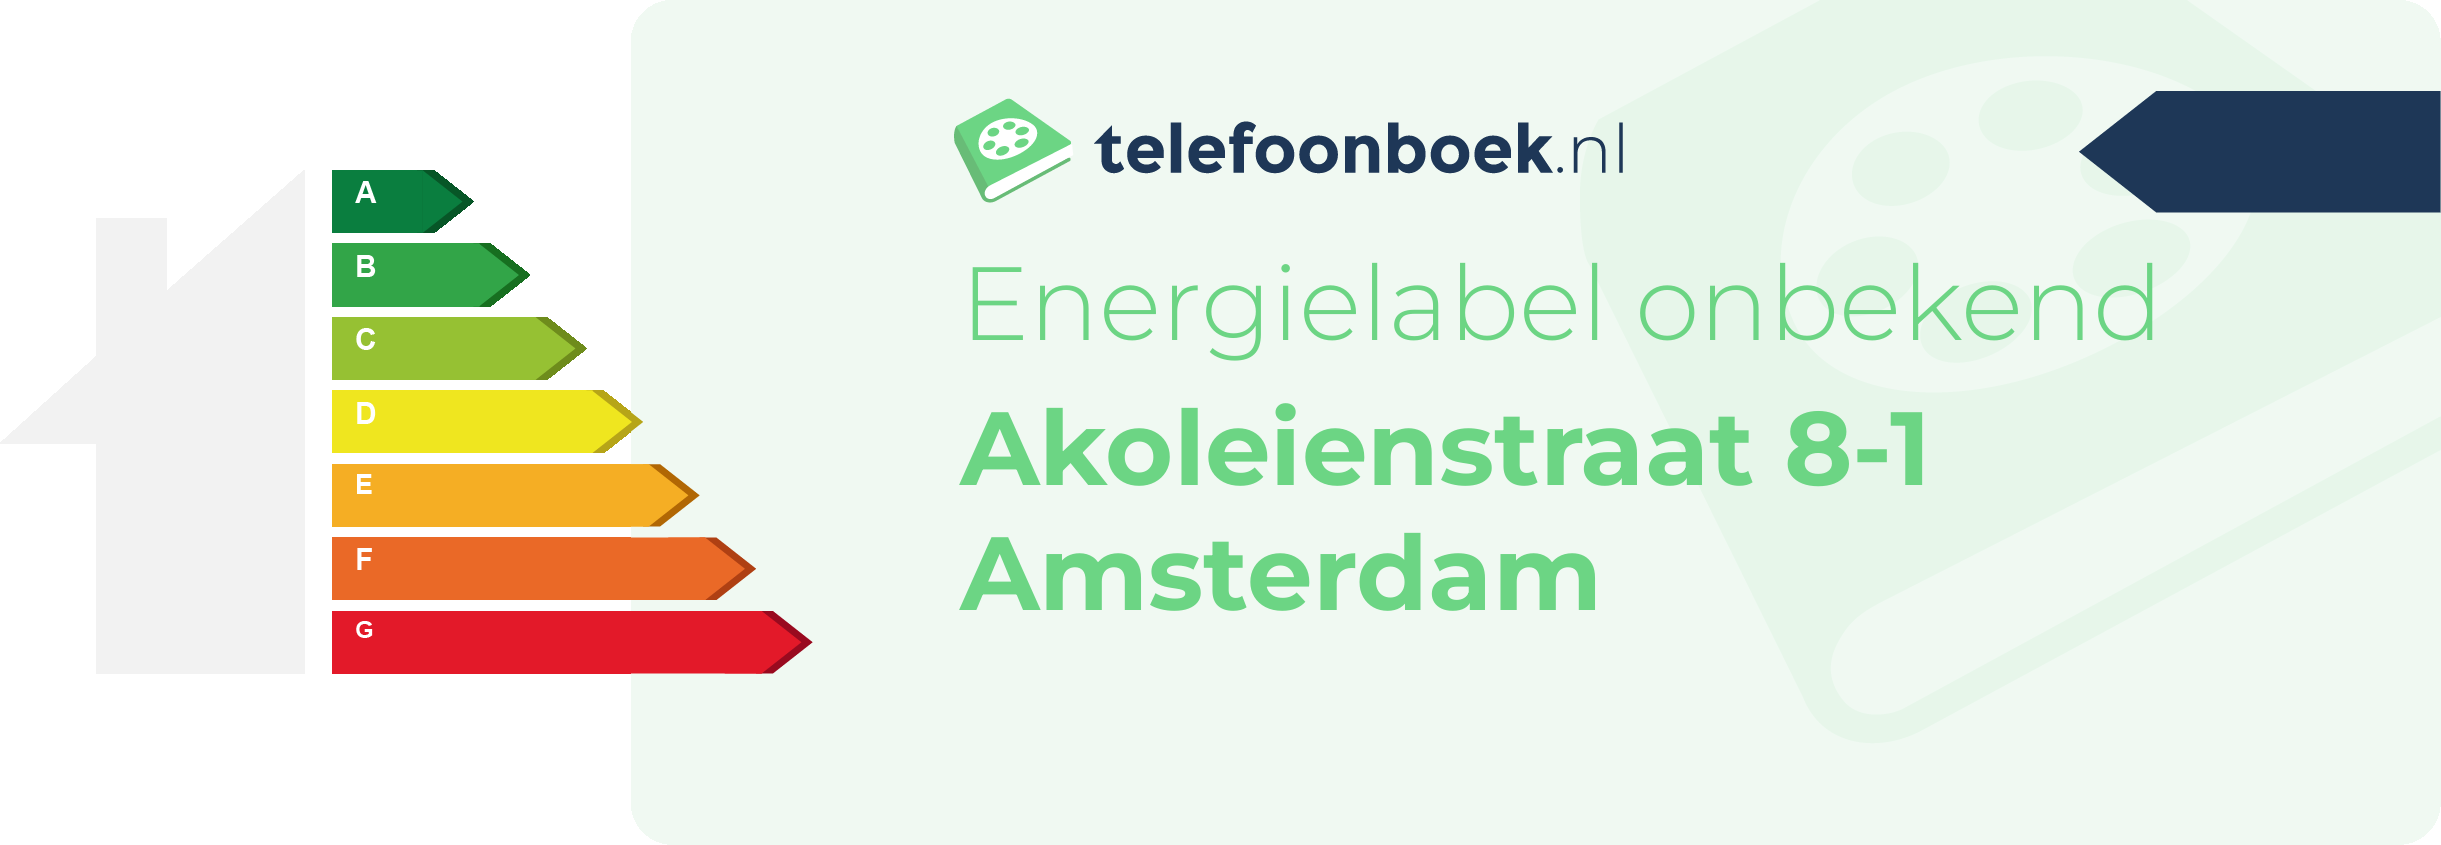 Energielabel Akoleienstraat 8-1 Amsterdam